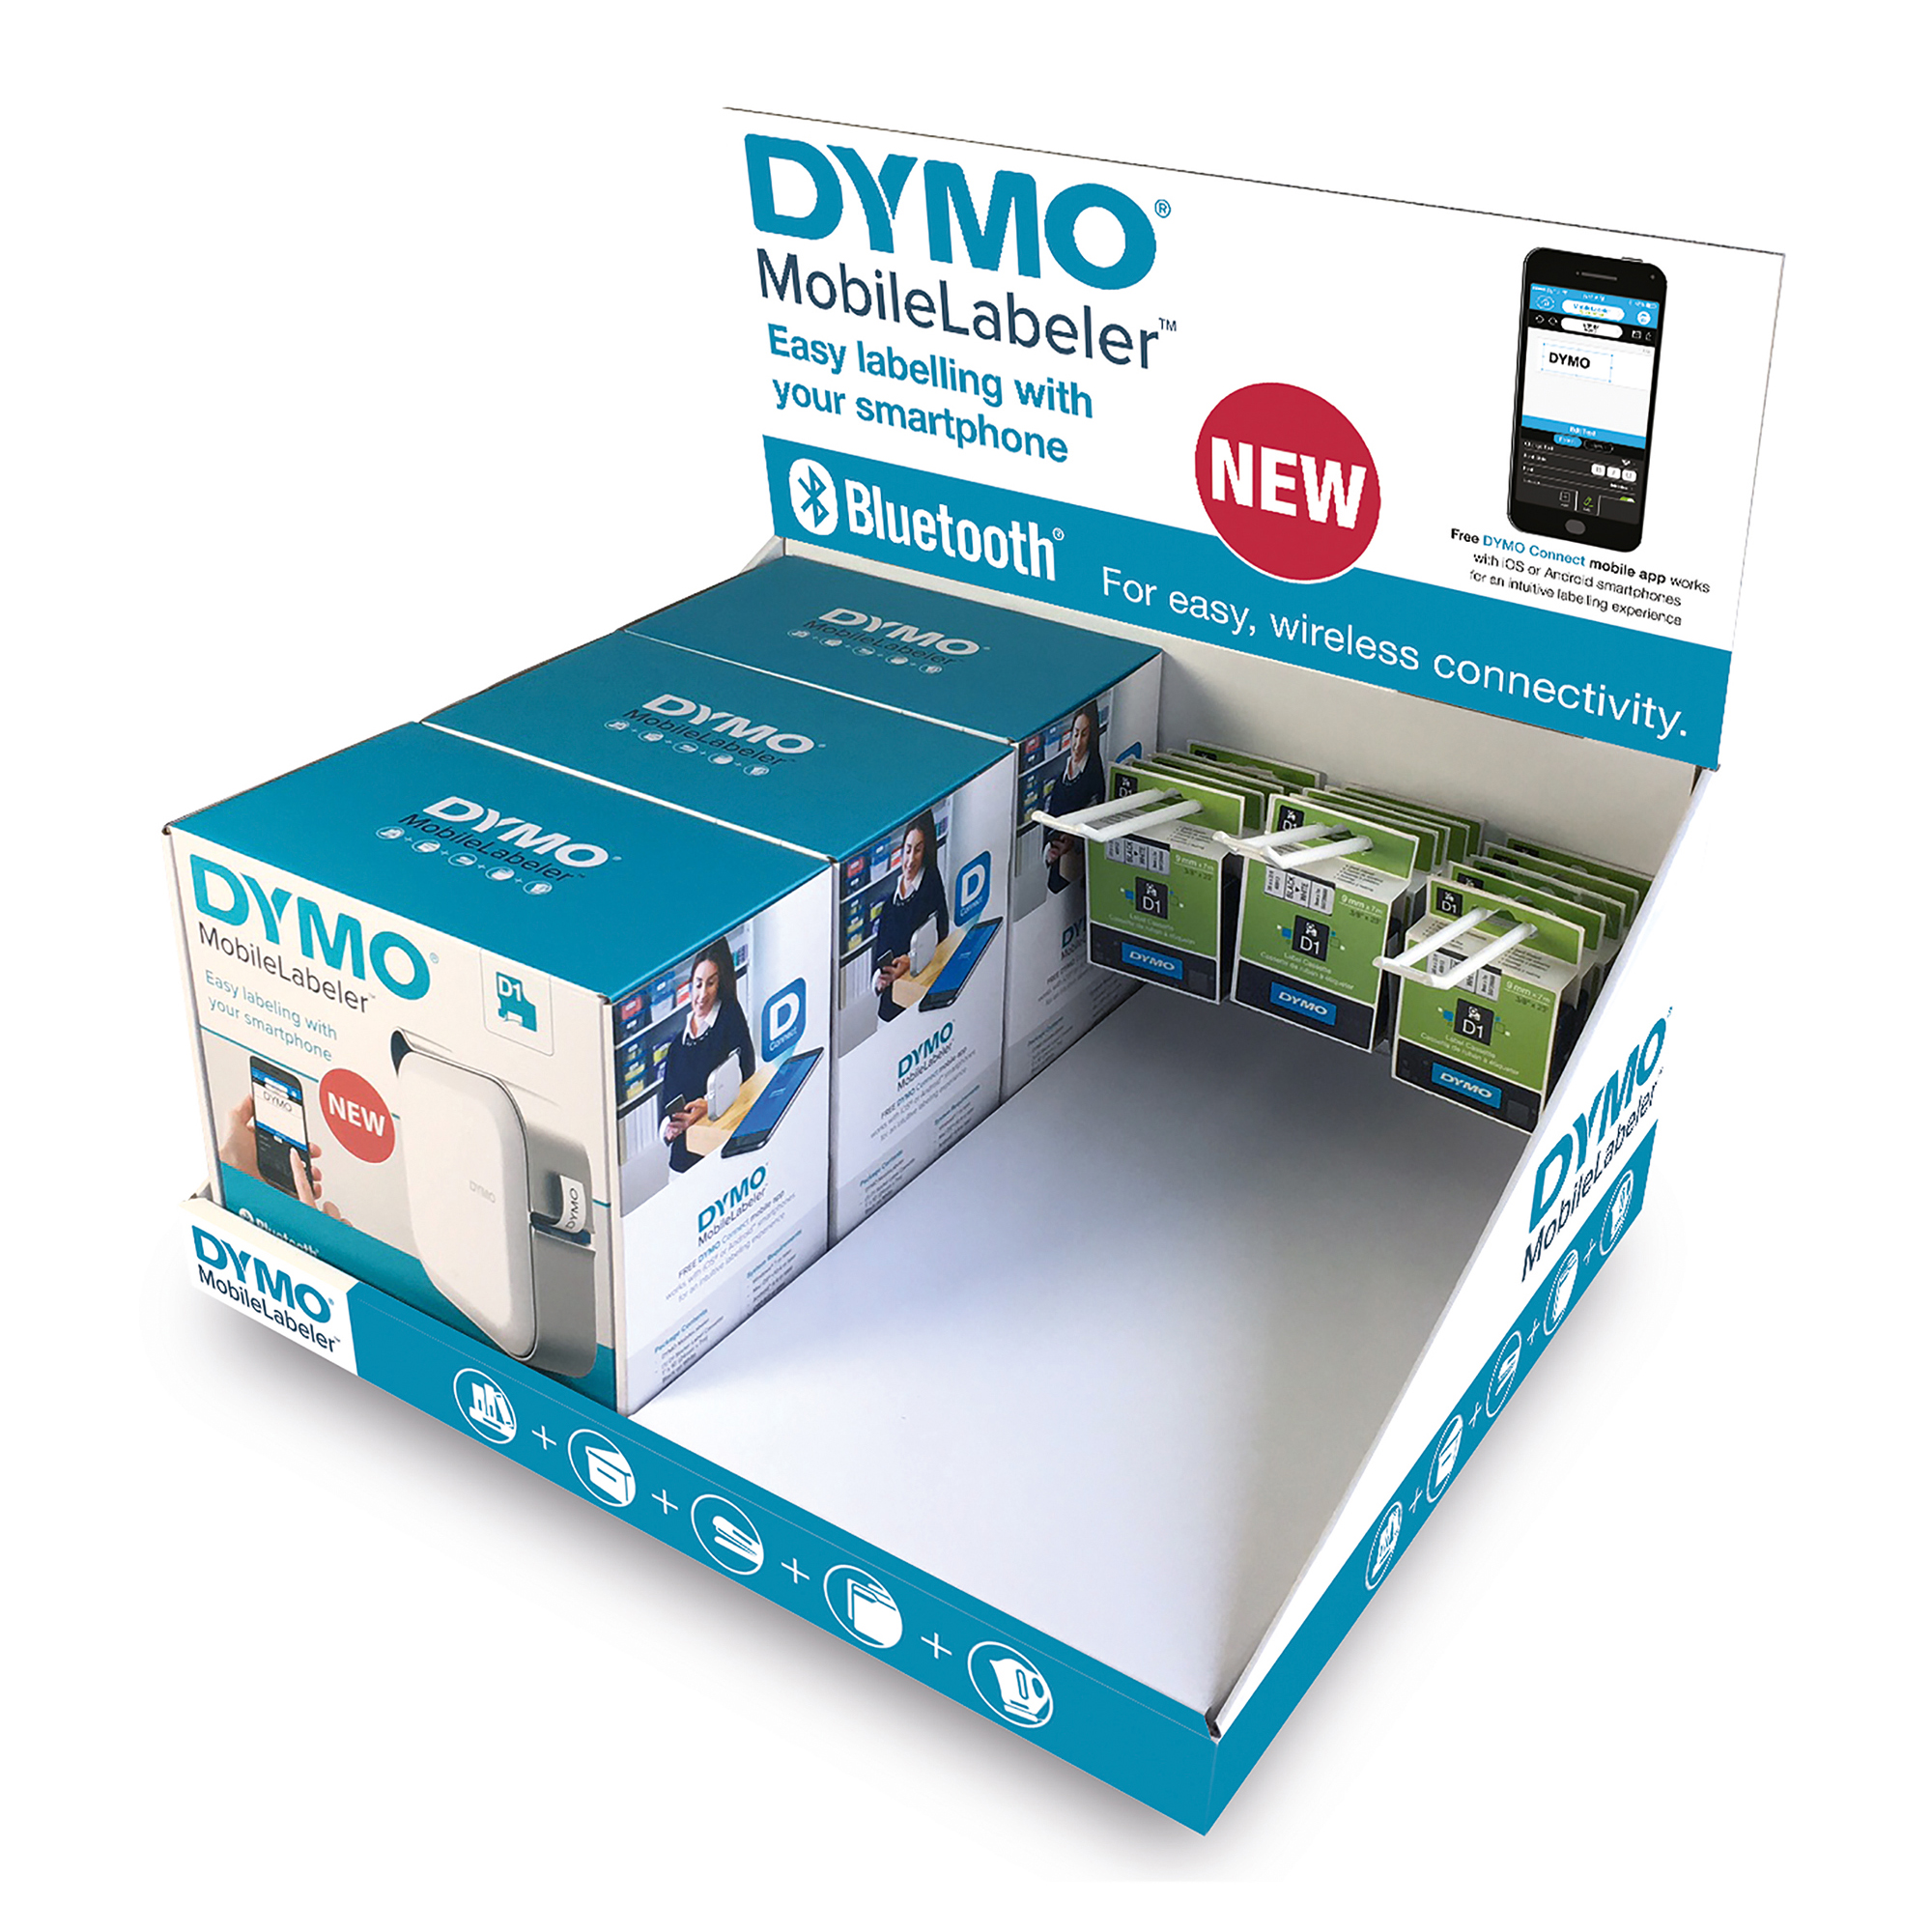 Expo Dymo 3 Etichettatrici Mobile Labeler 15 Nastri D1 12mm 2000822 3501170008225